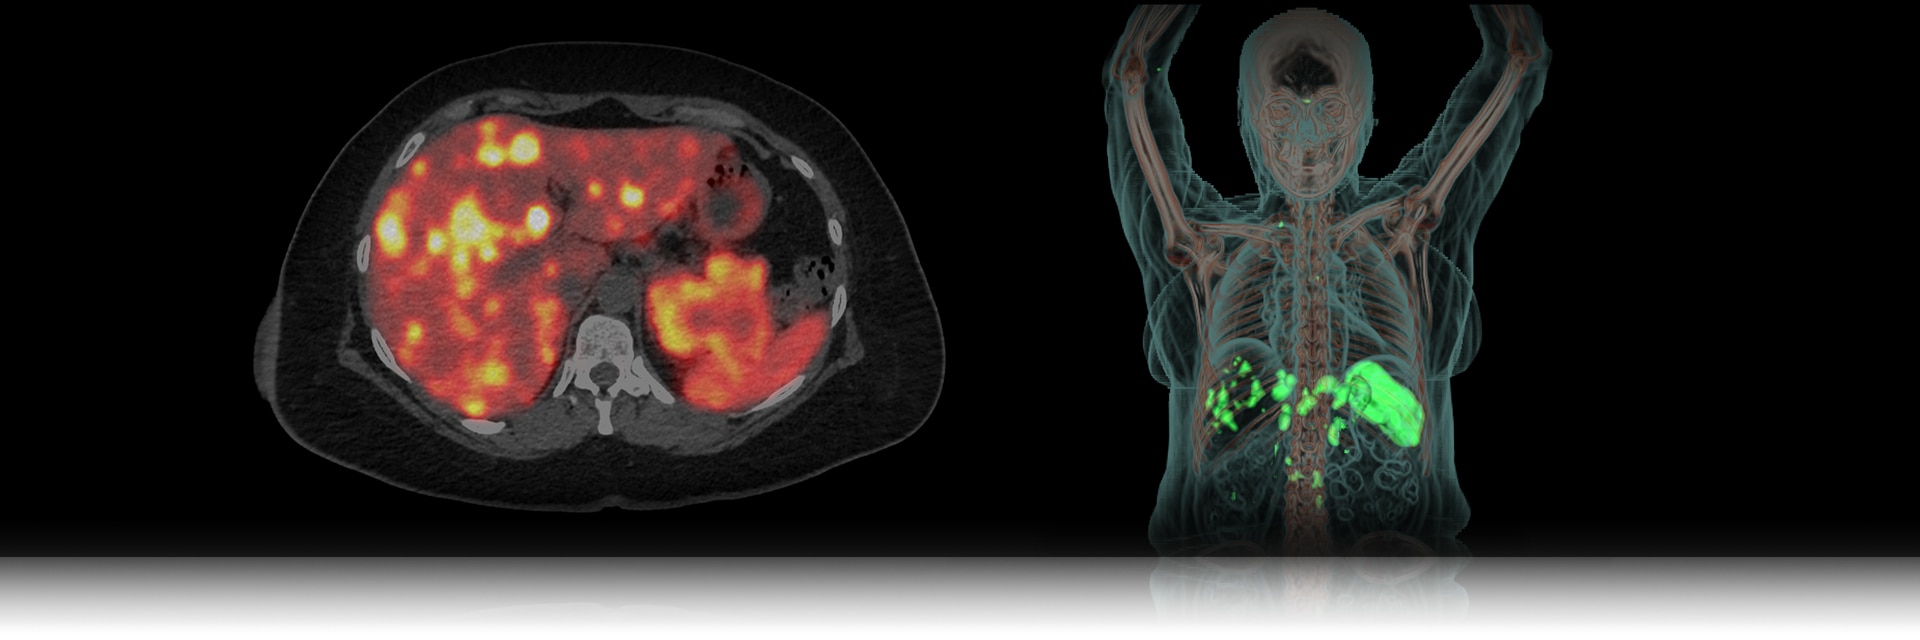 GEHC MI Landing Page Updates PET Radiopharmacy Image 1